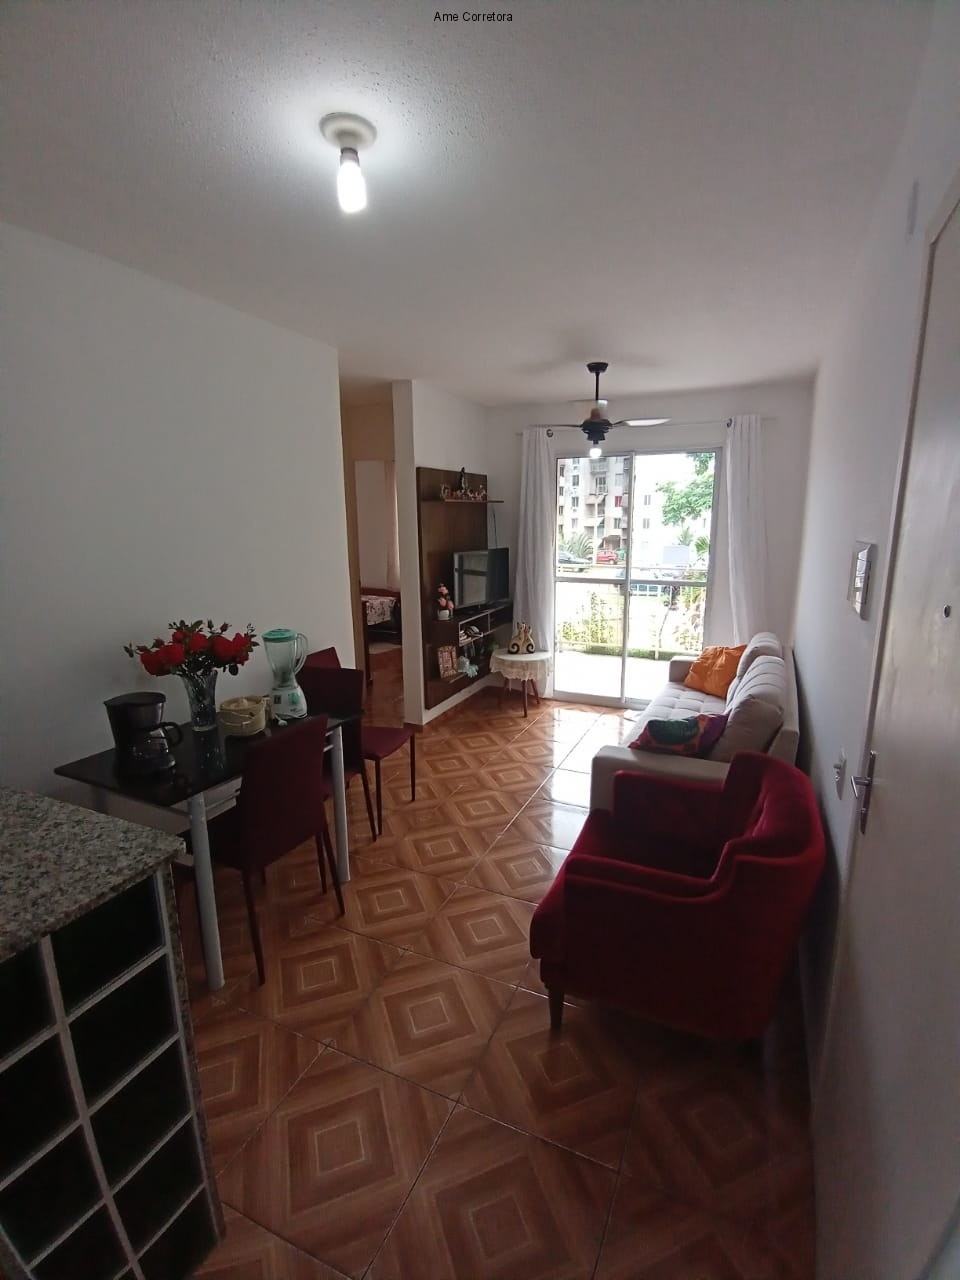 FOTO 03 - Apartamento 2 quartos à venda Rio de Janeiro,RJ - R$ 150.000 - AP00435 - 3